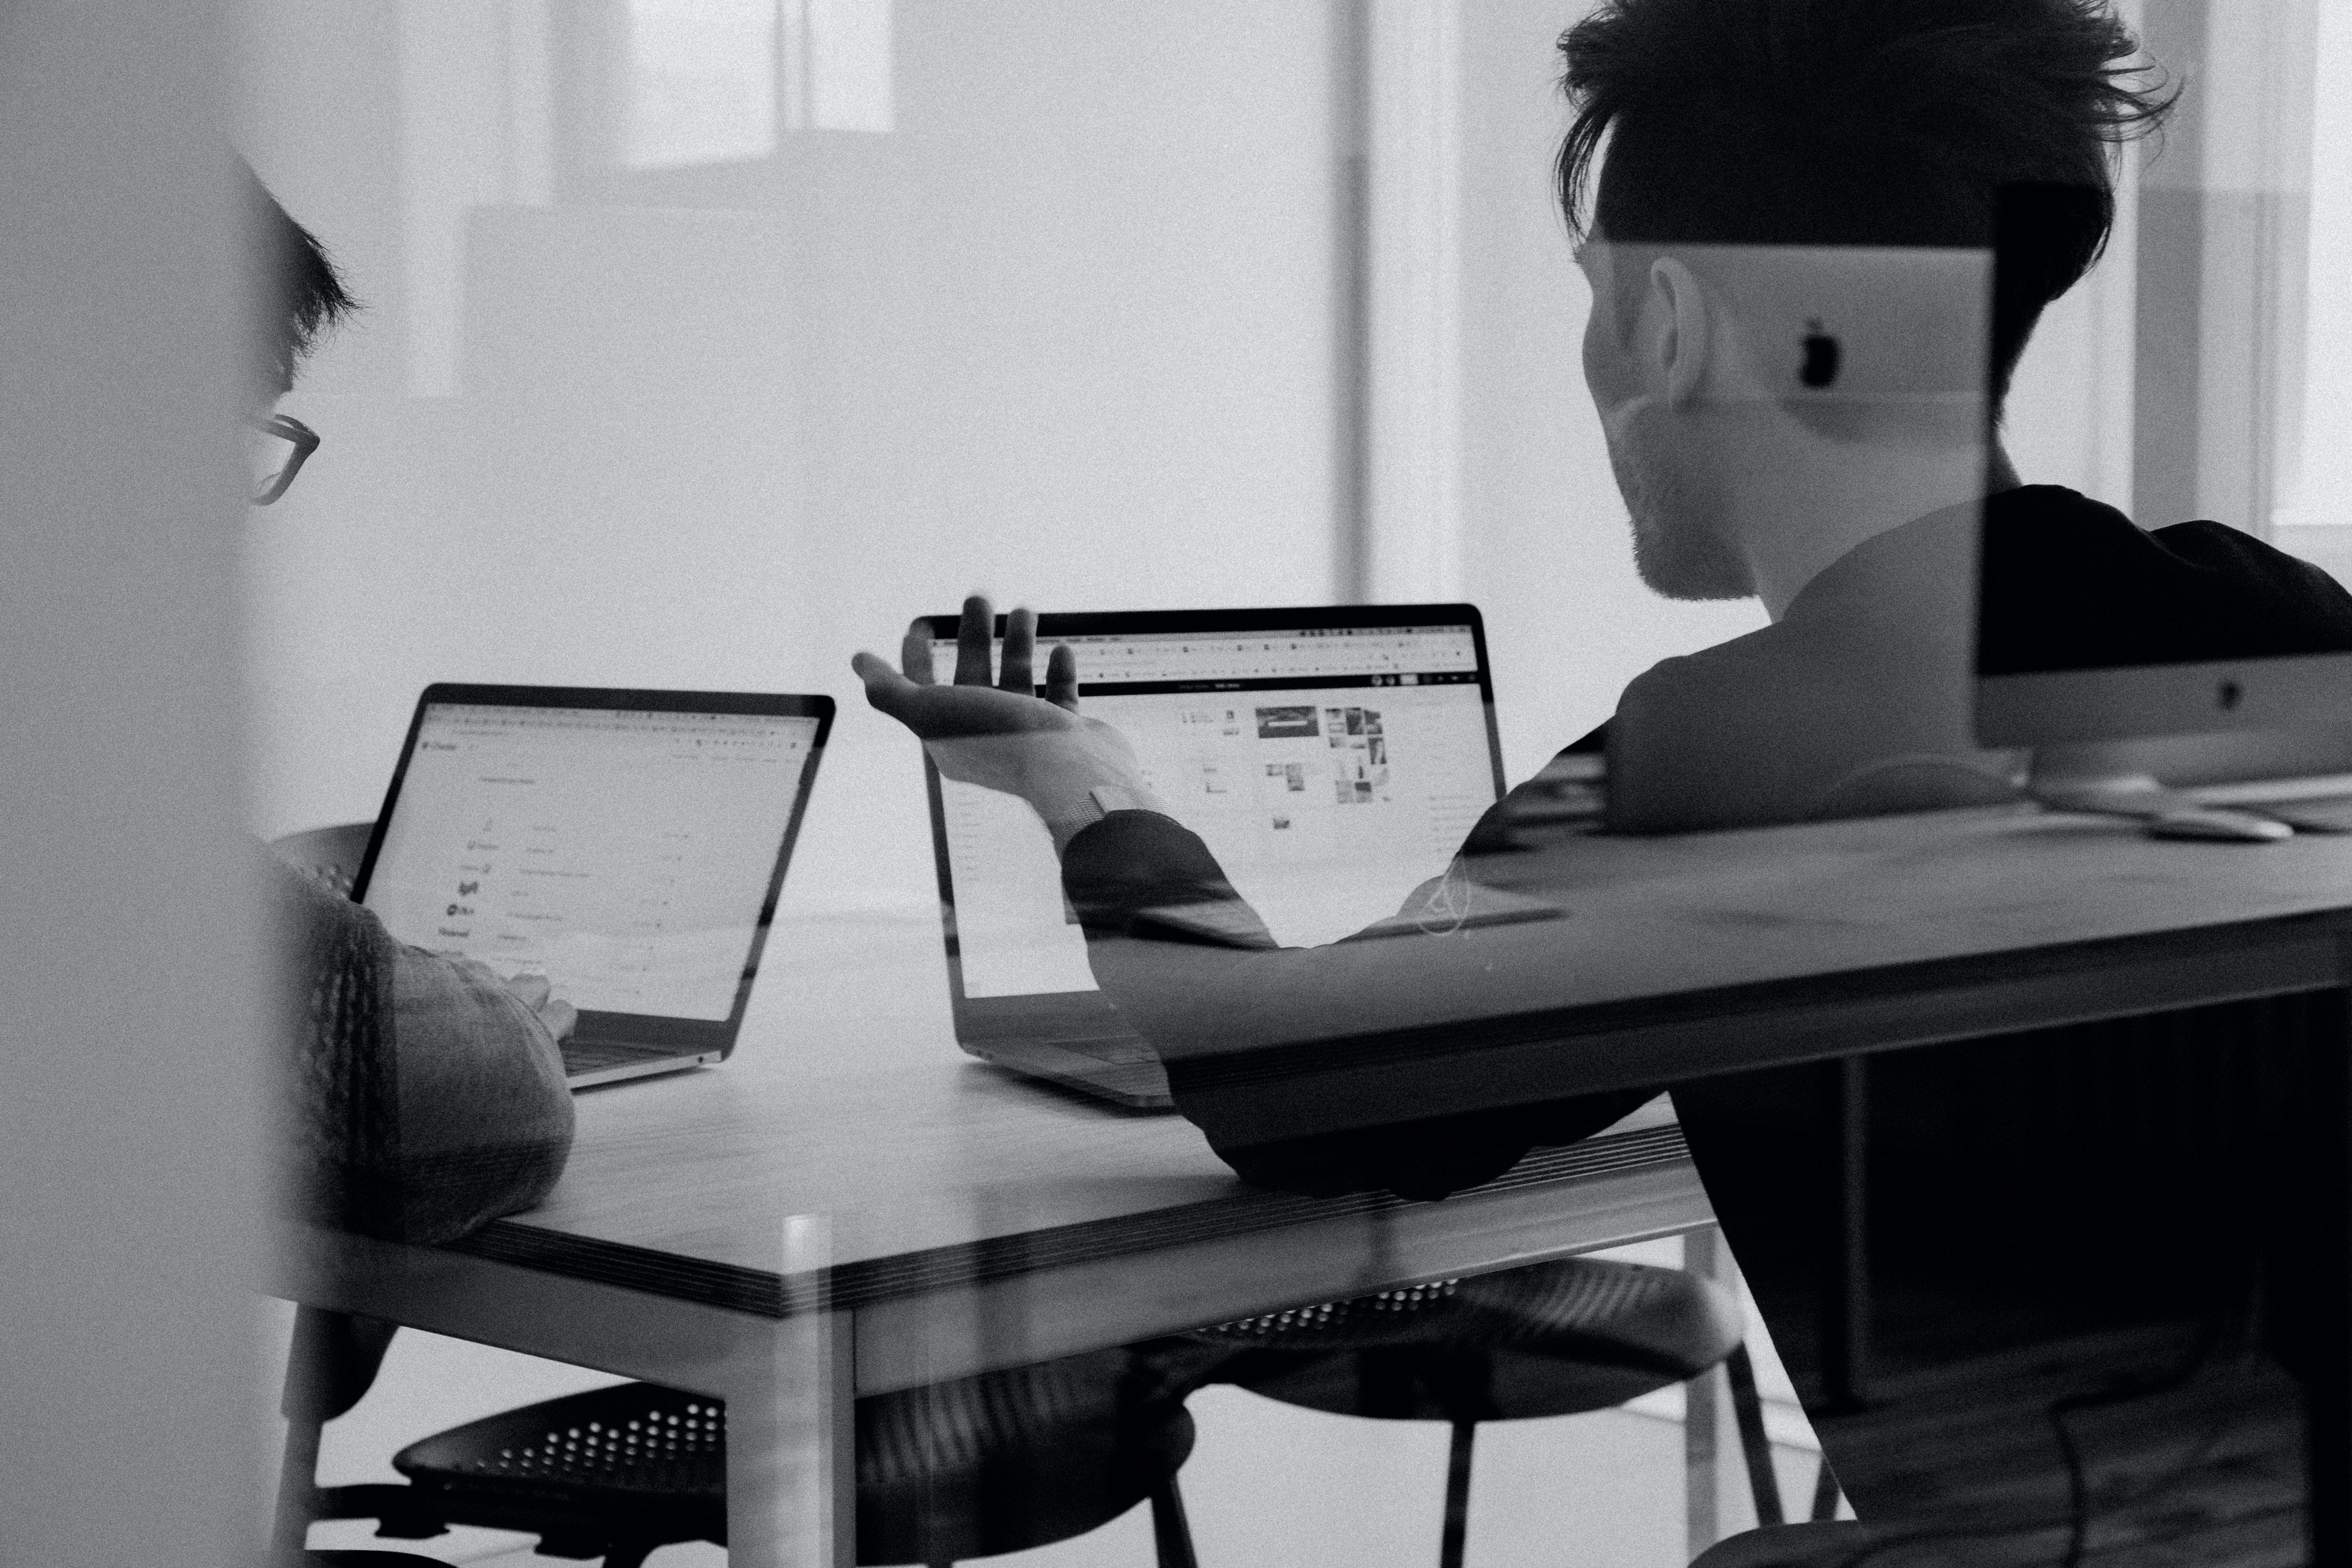 Ein schwarz-weiß Bild bei dem man zwei Menschen in einer Spiegelung sieht, die am Laptop sitzen und über eine Executive Summary reden